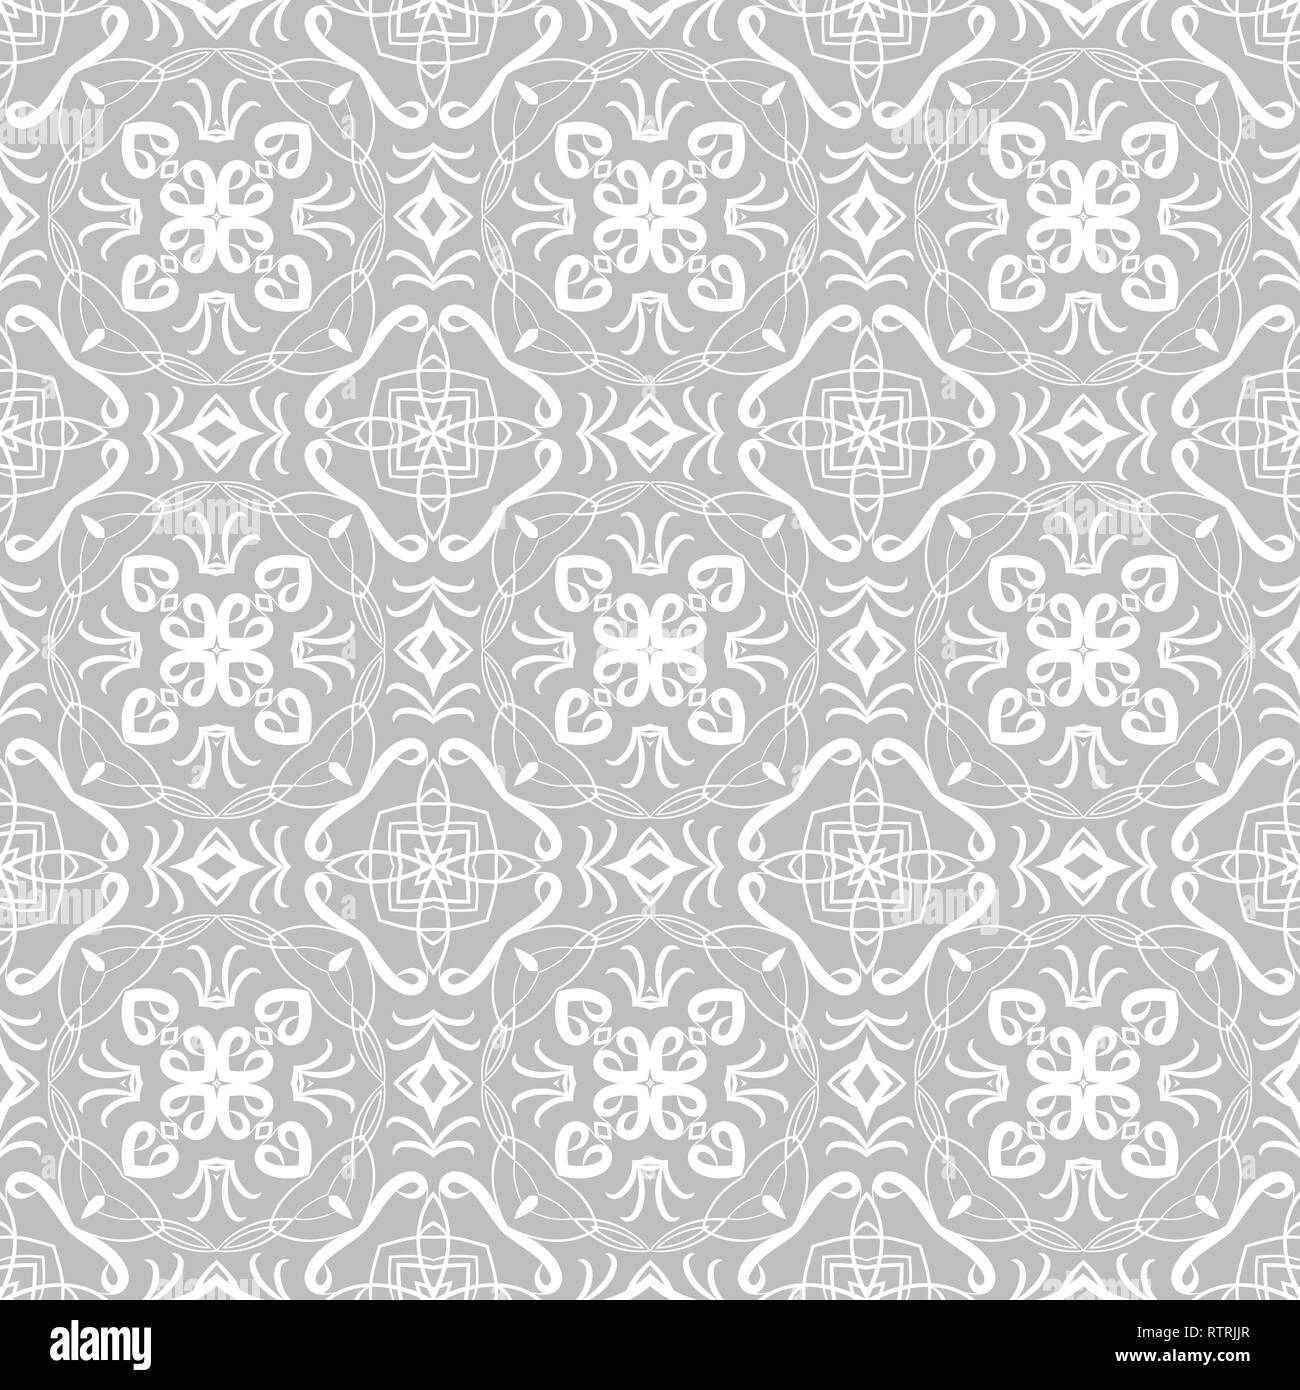 Vektor nahtlose Muster. Stilvolle Textildruck mit geometrischen ethnischen Design. Grauen und weißen Stoff Hintergrund mit abstrakten Verzierung. Monochrome Fabri Stock Vektor